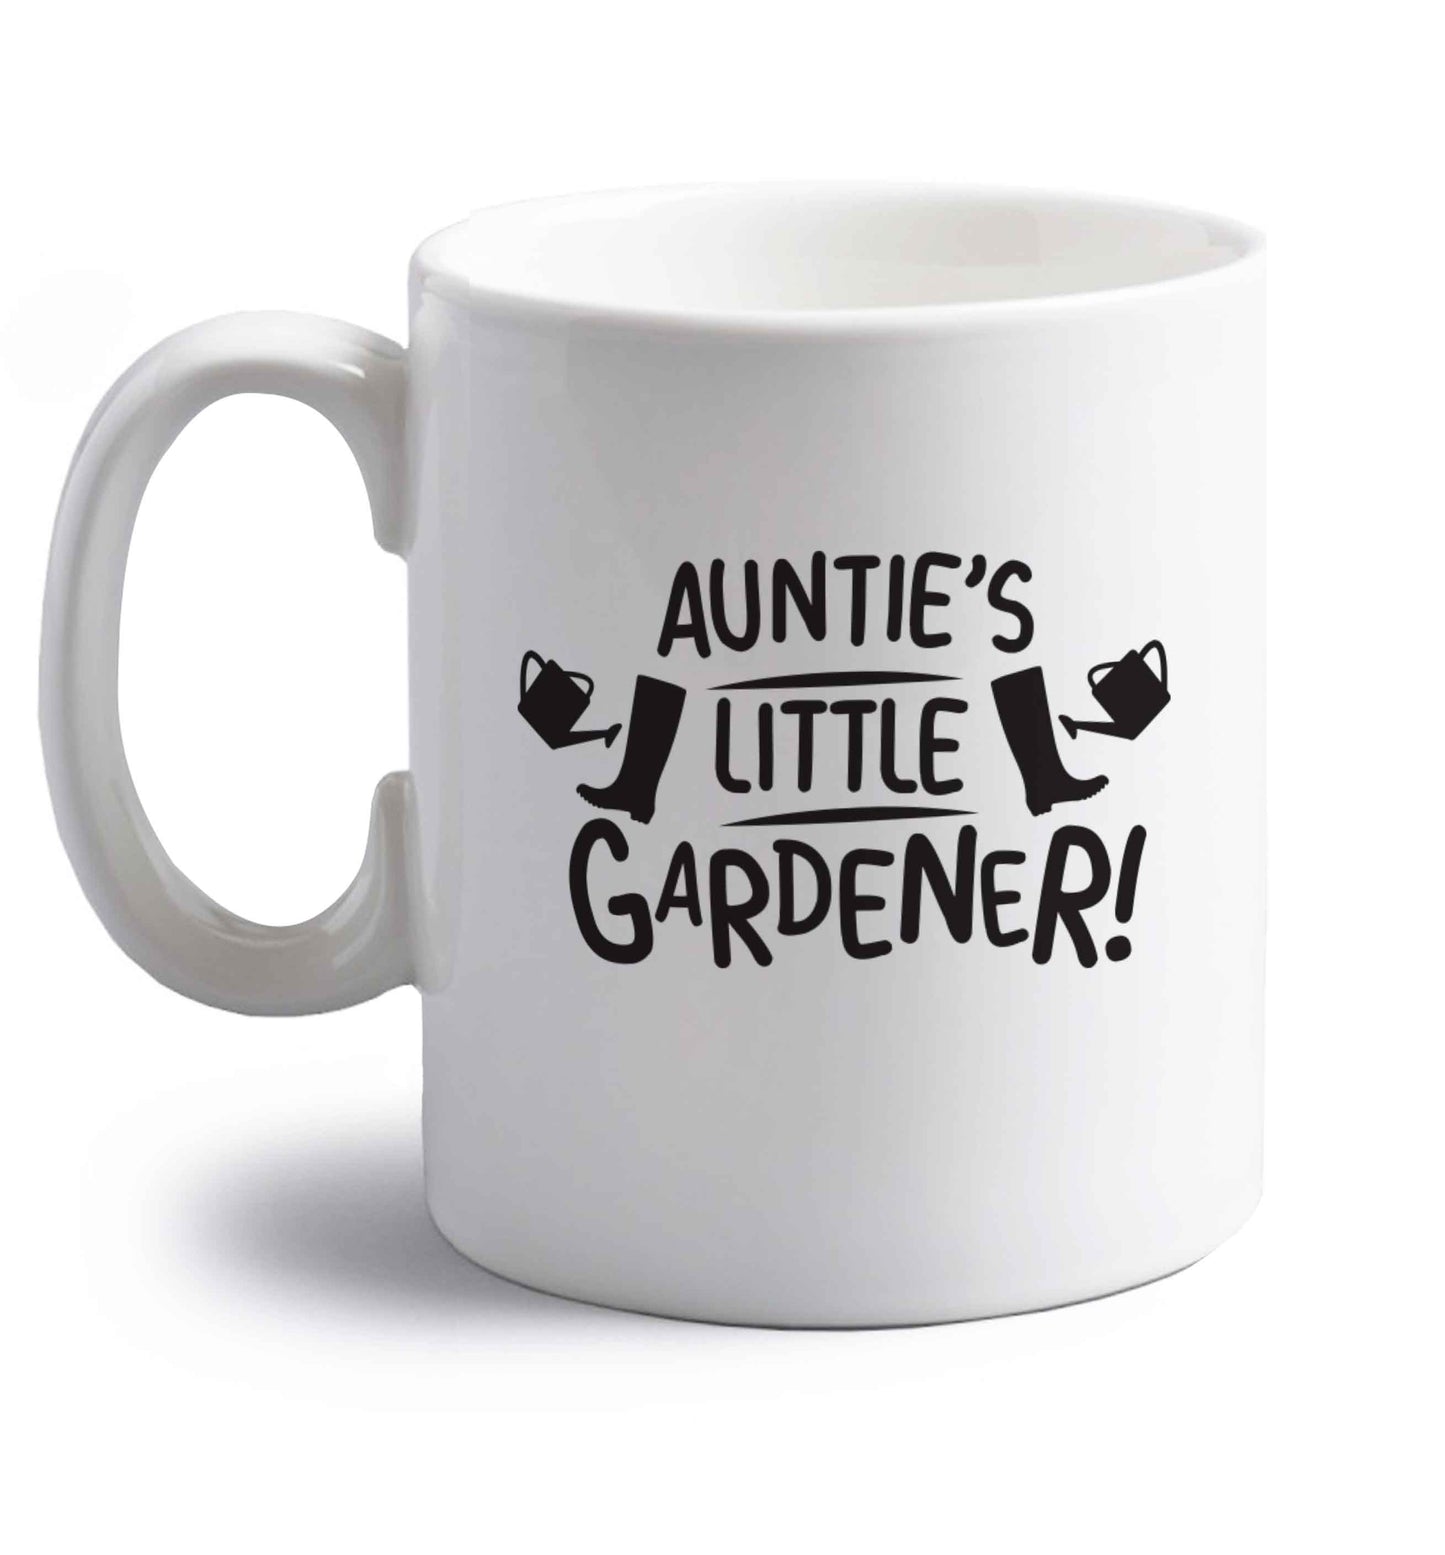 Auntie's little gardener right handed white ceramic mug 